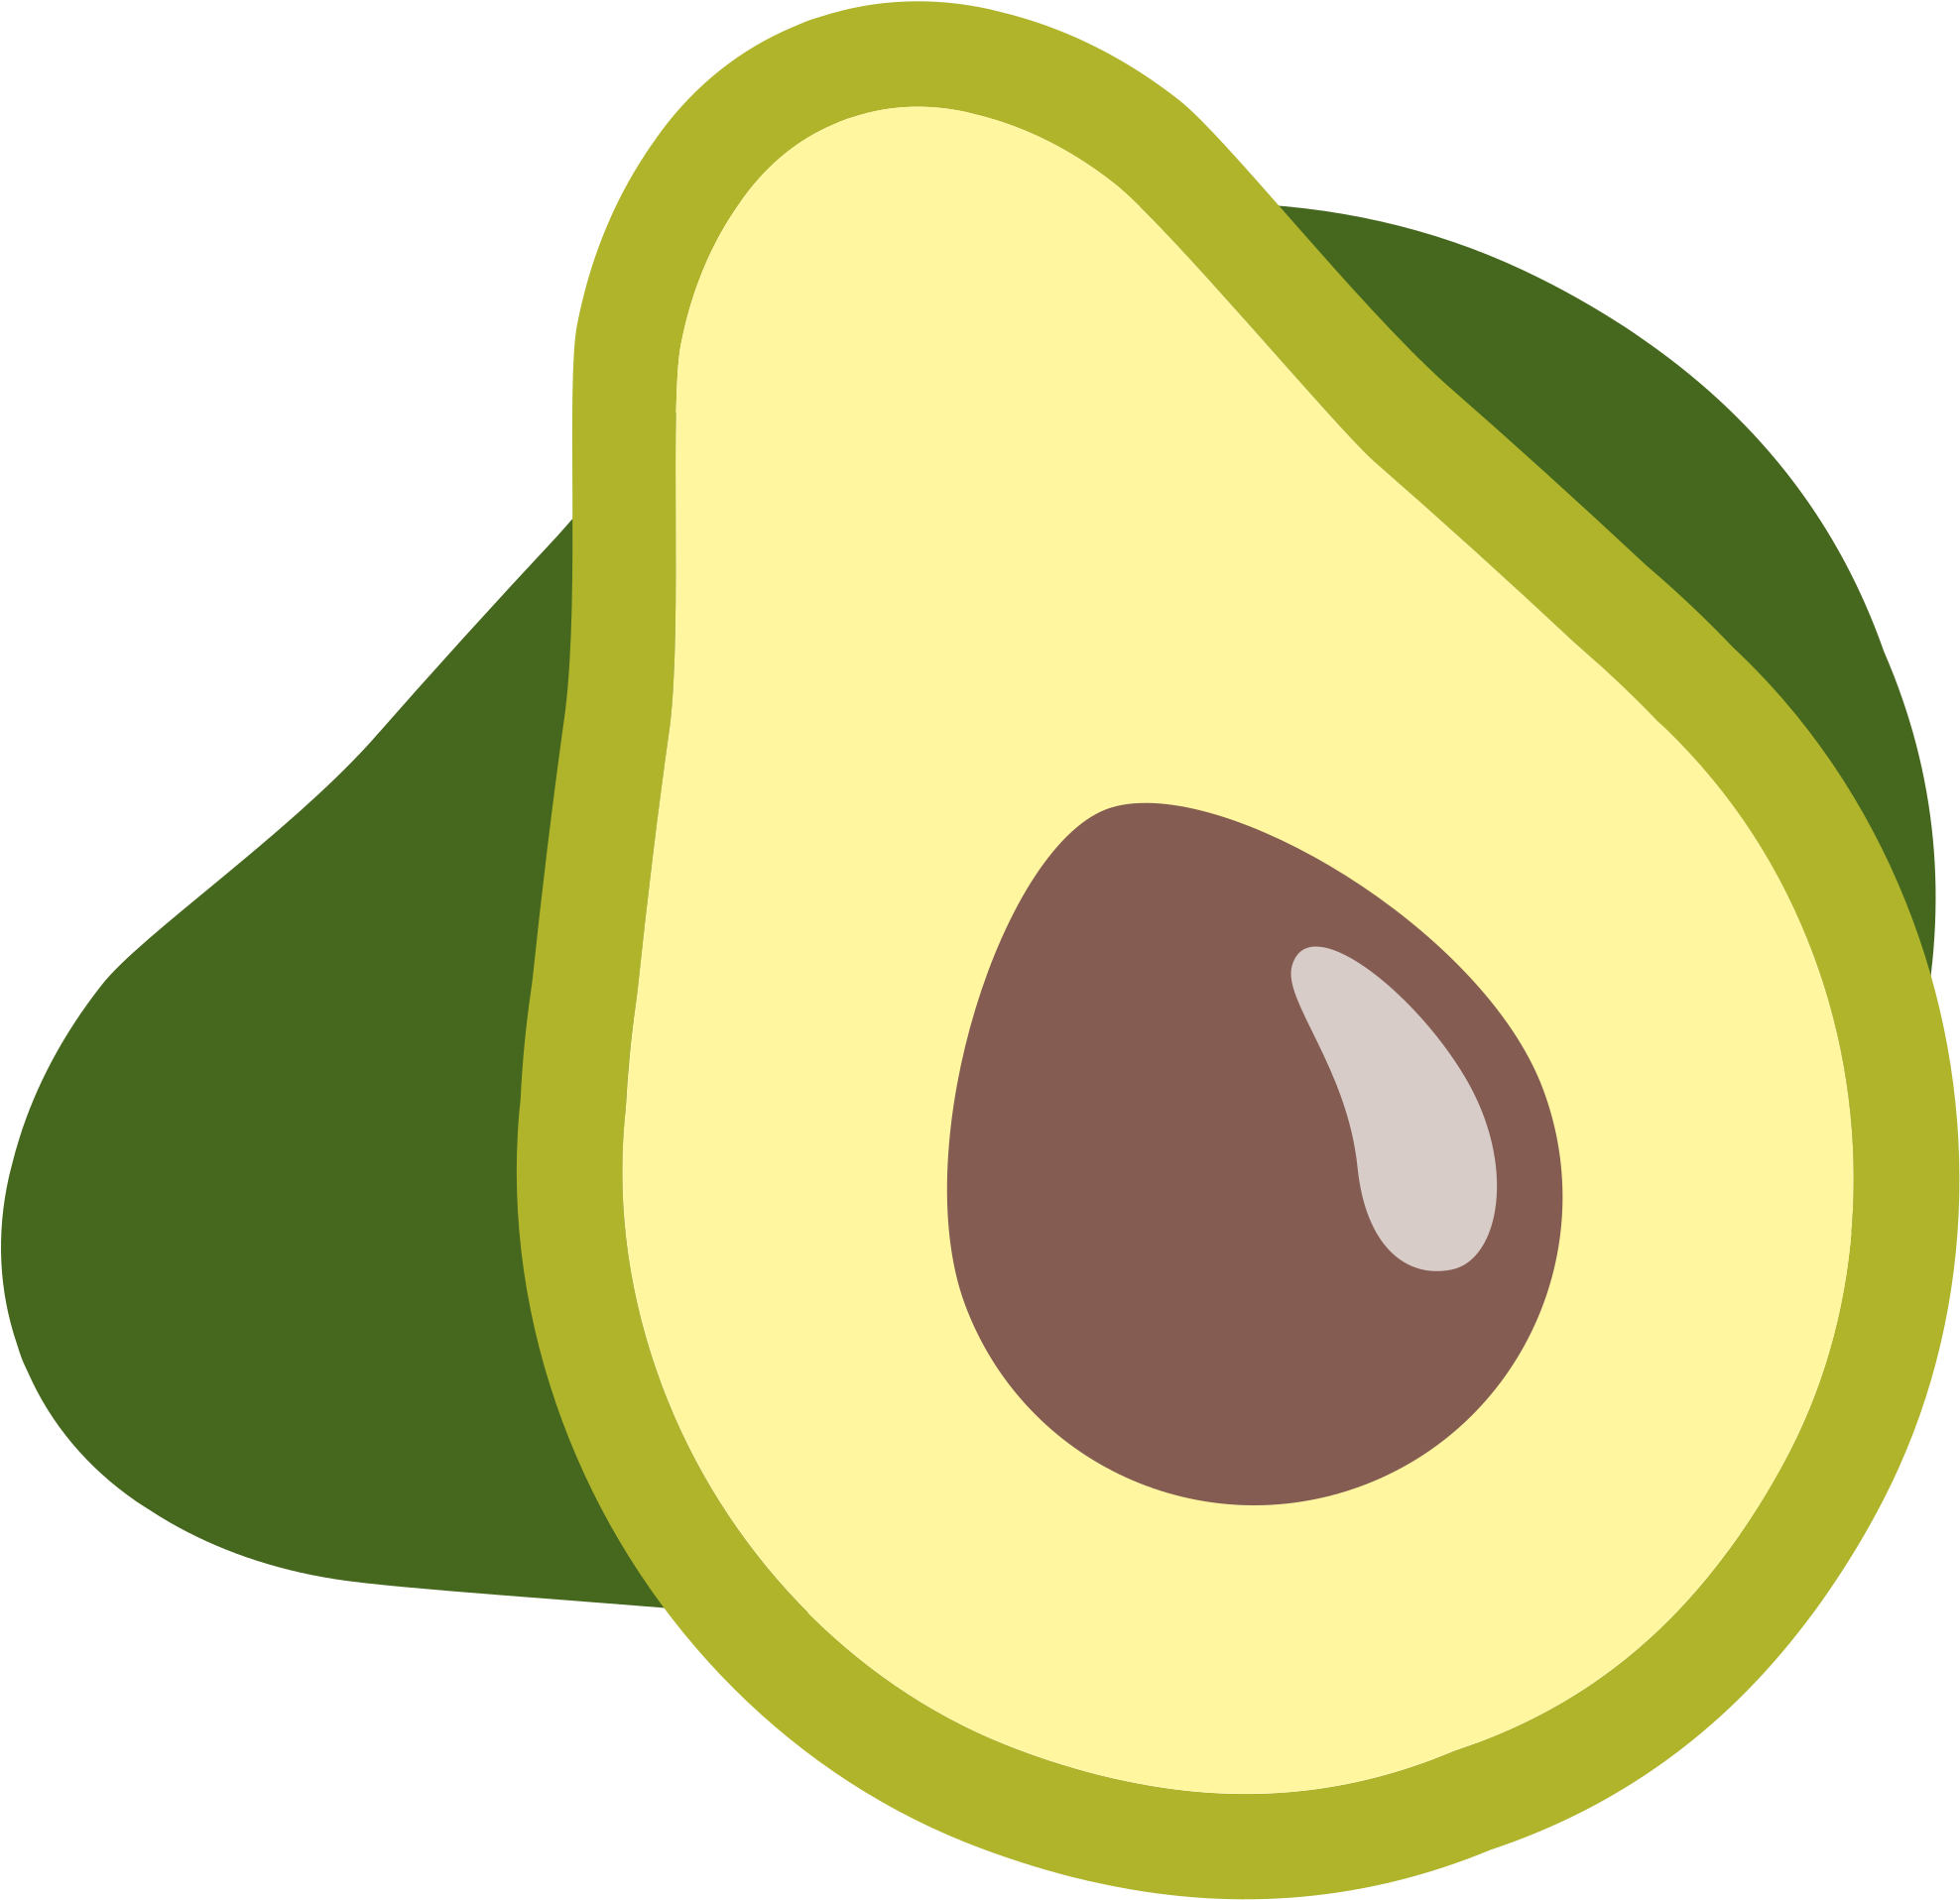 A Avocado Cut In Half